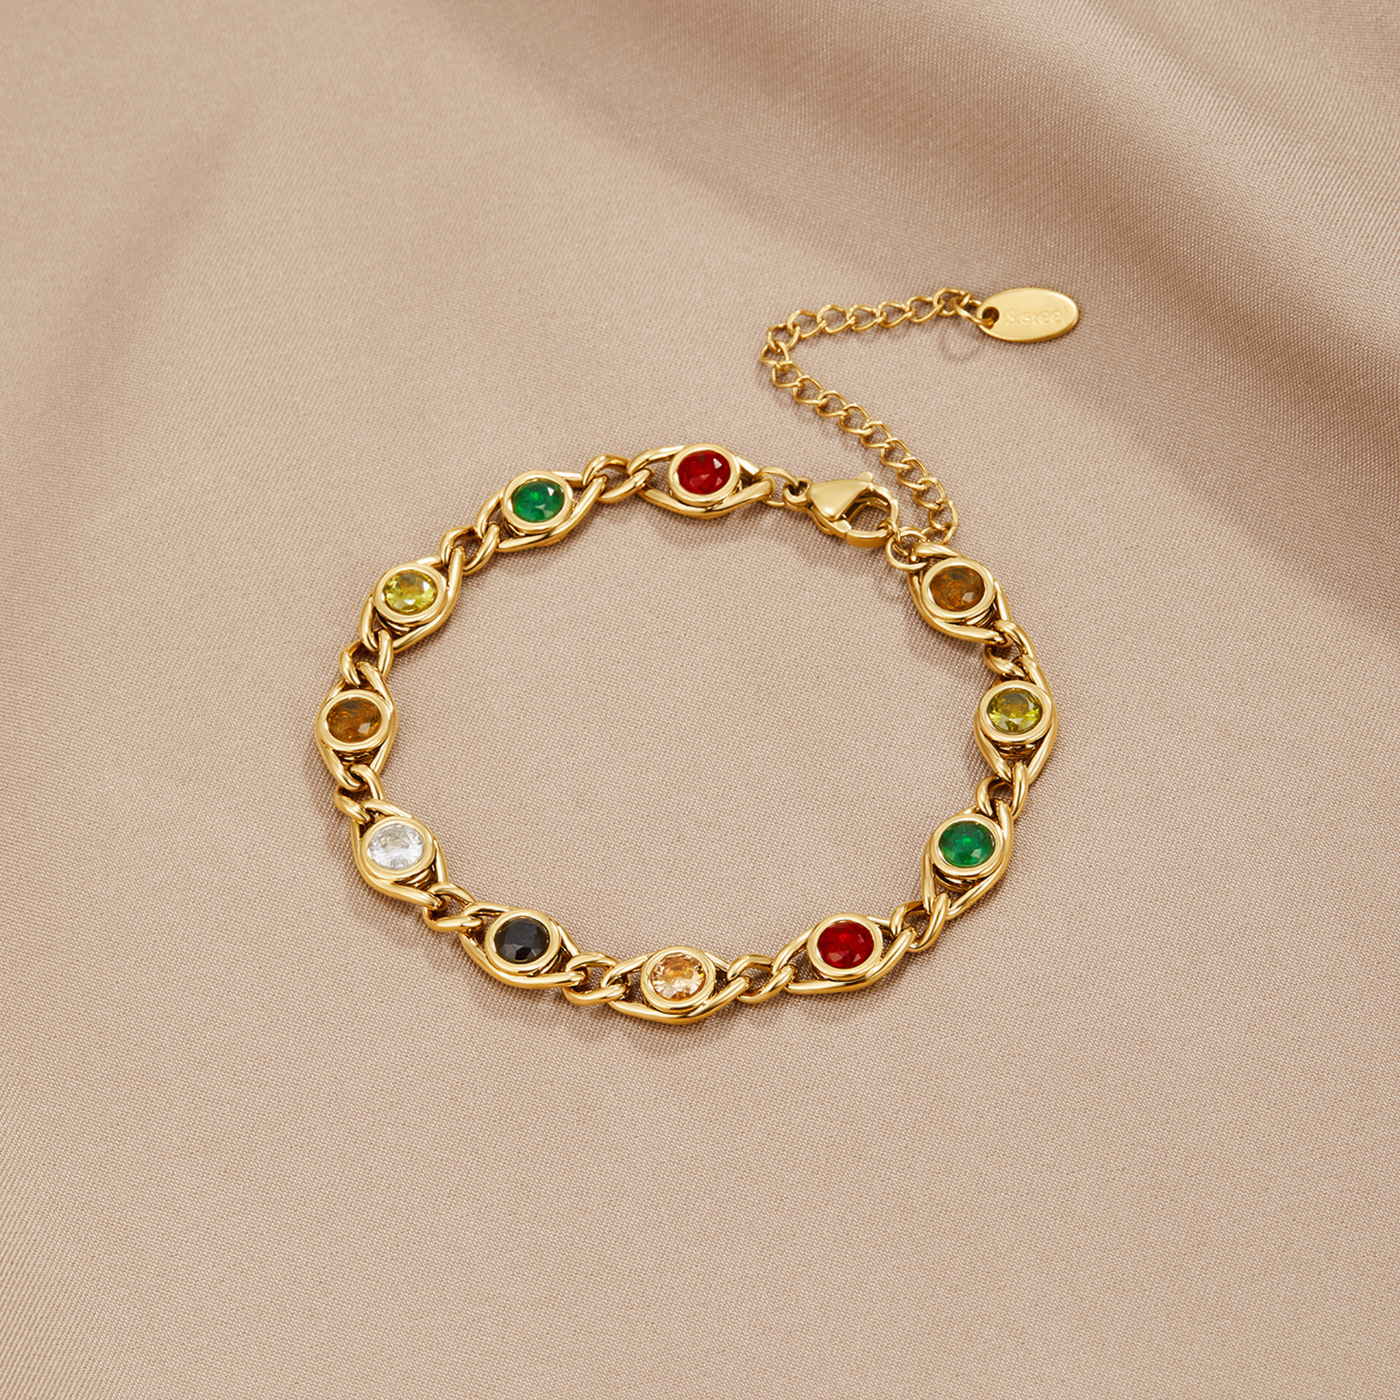 Persia Rainbow Bracelet